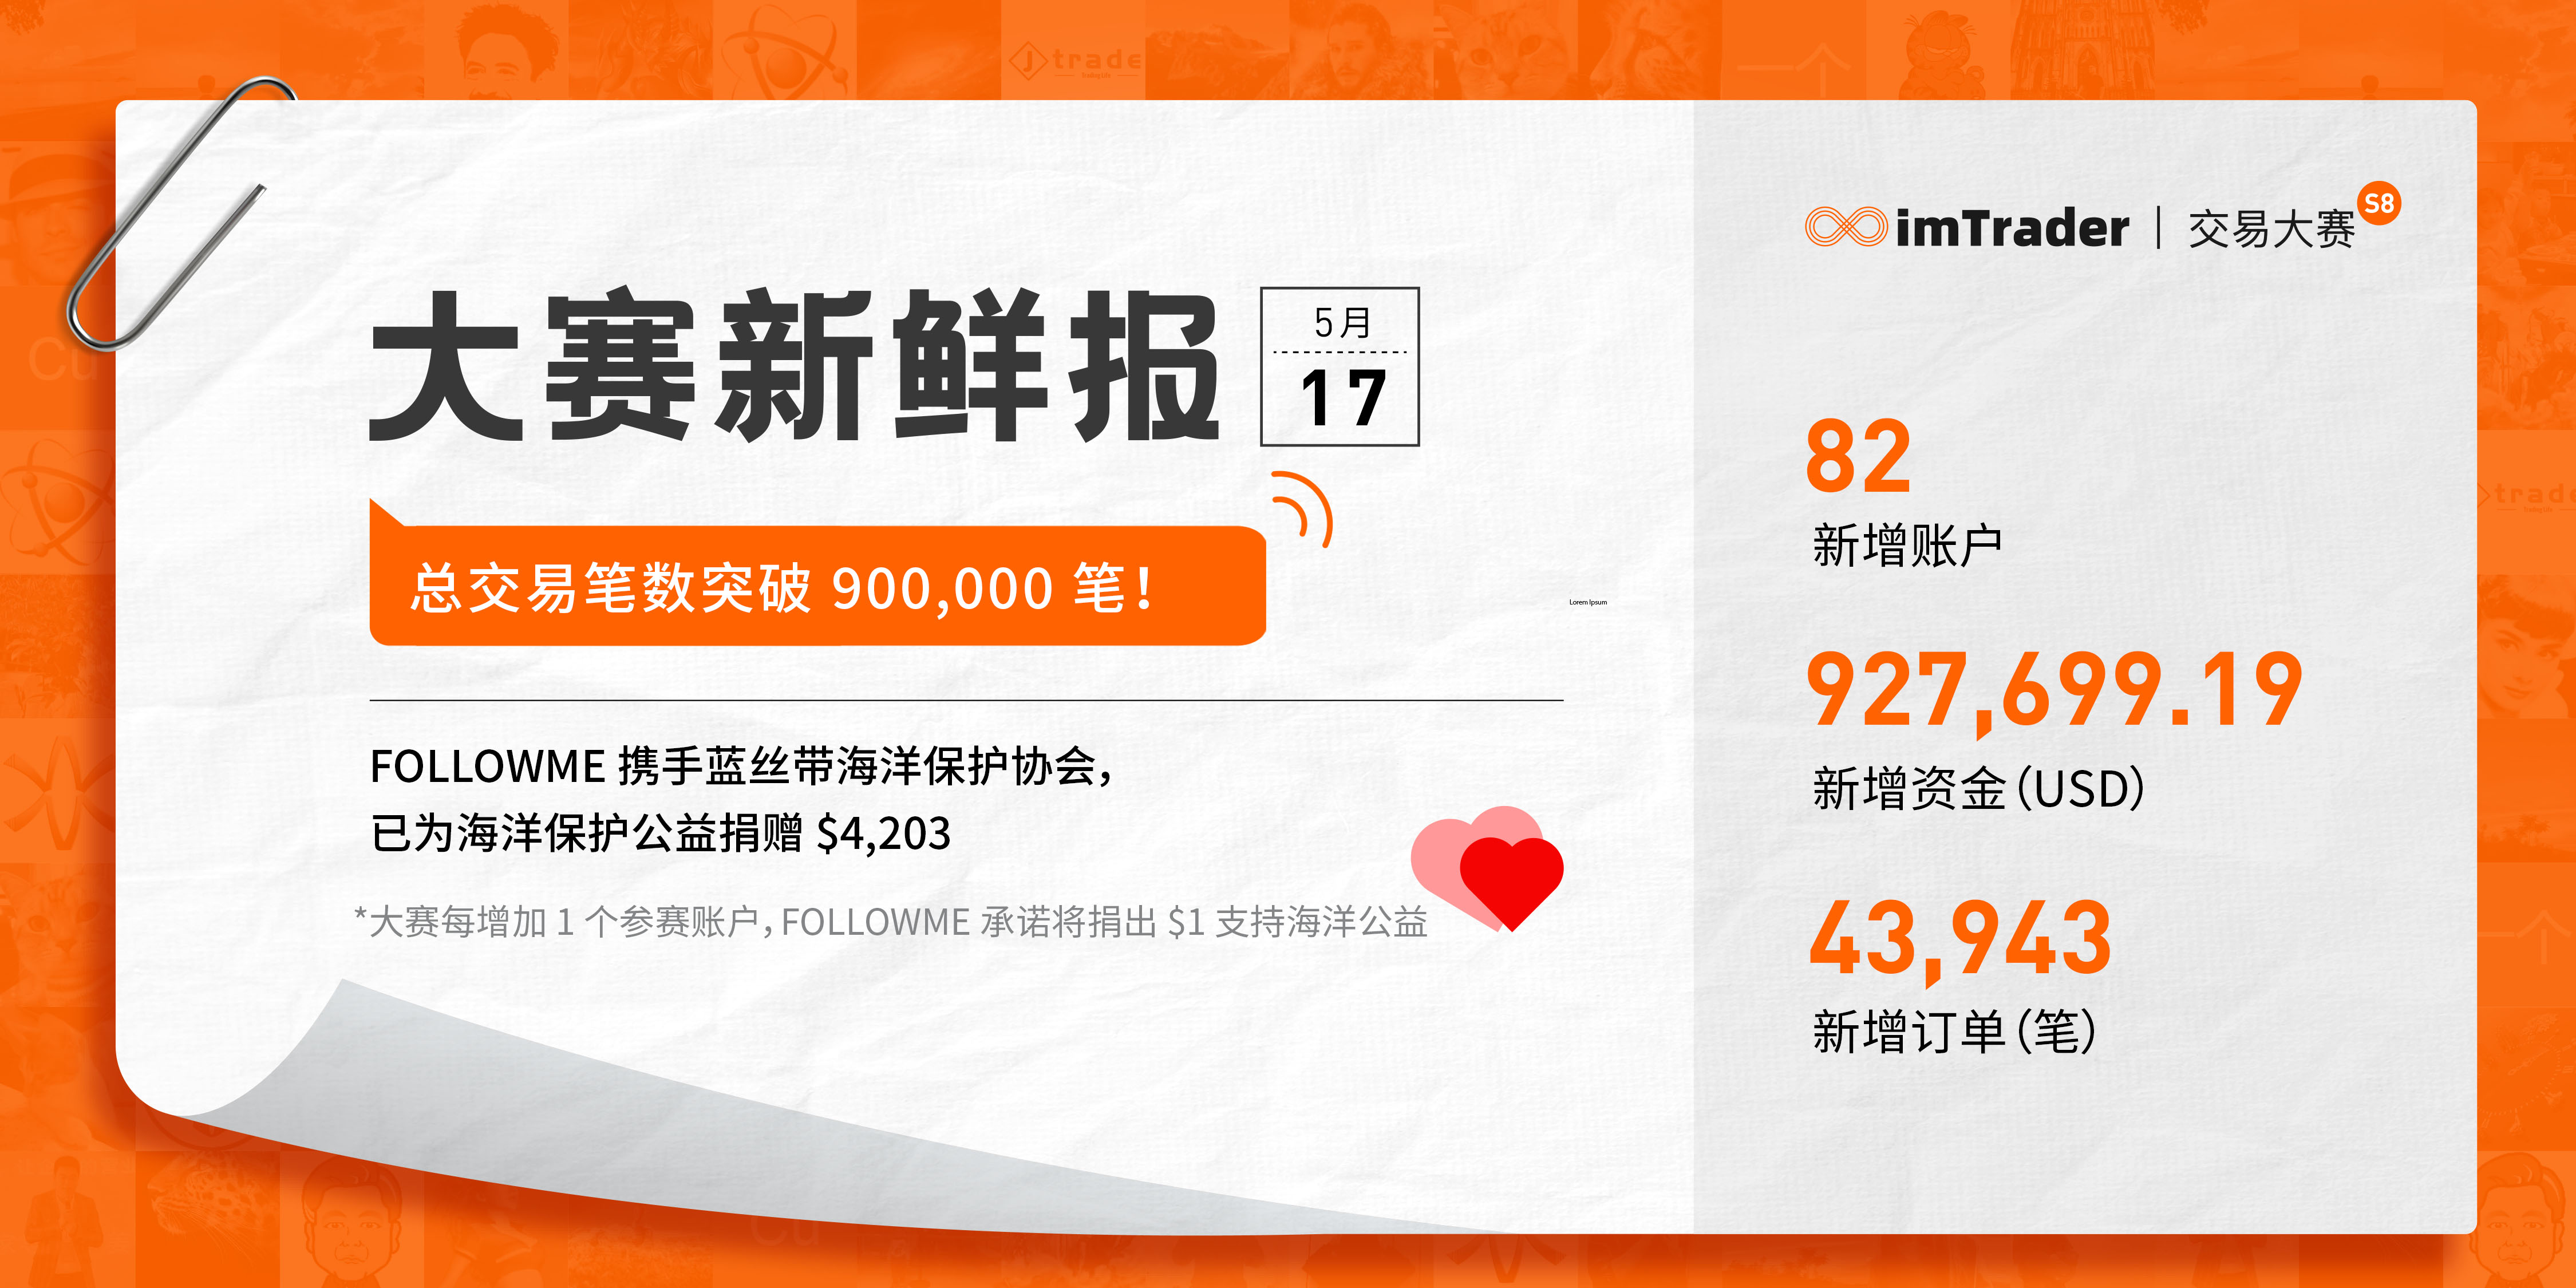 5月17日大赛新鲜报丨总交易笔数突破 900,000 笔！